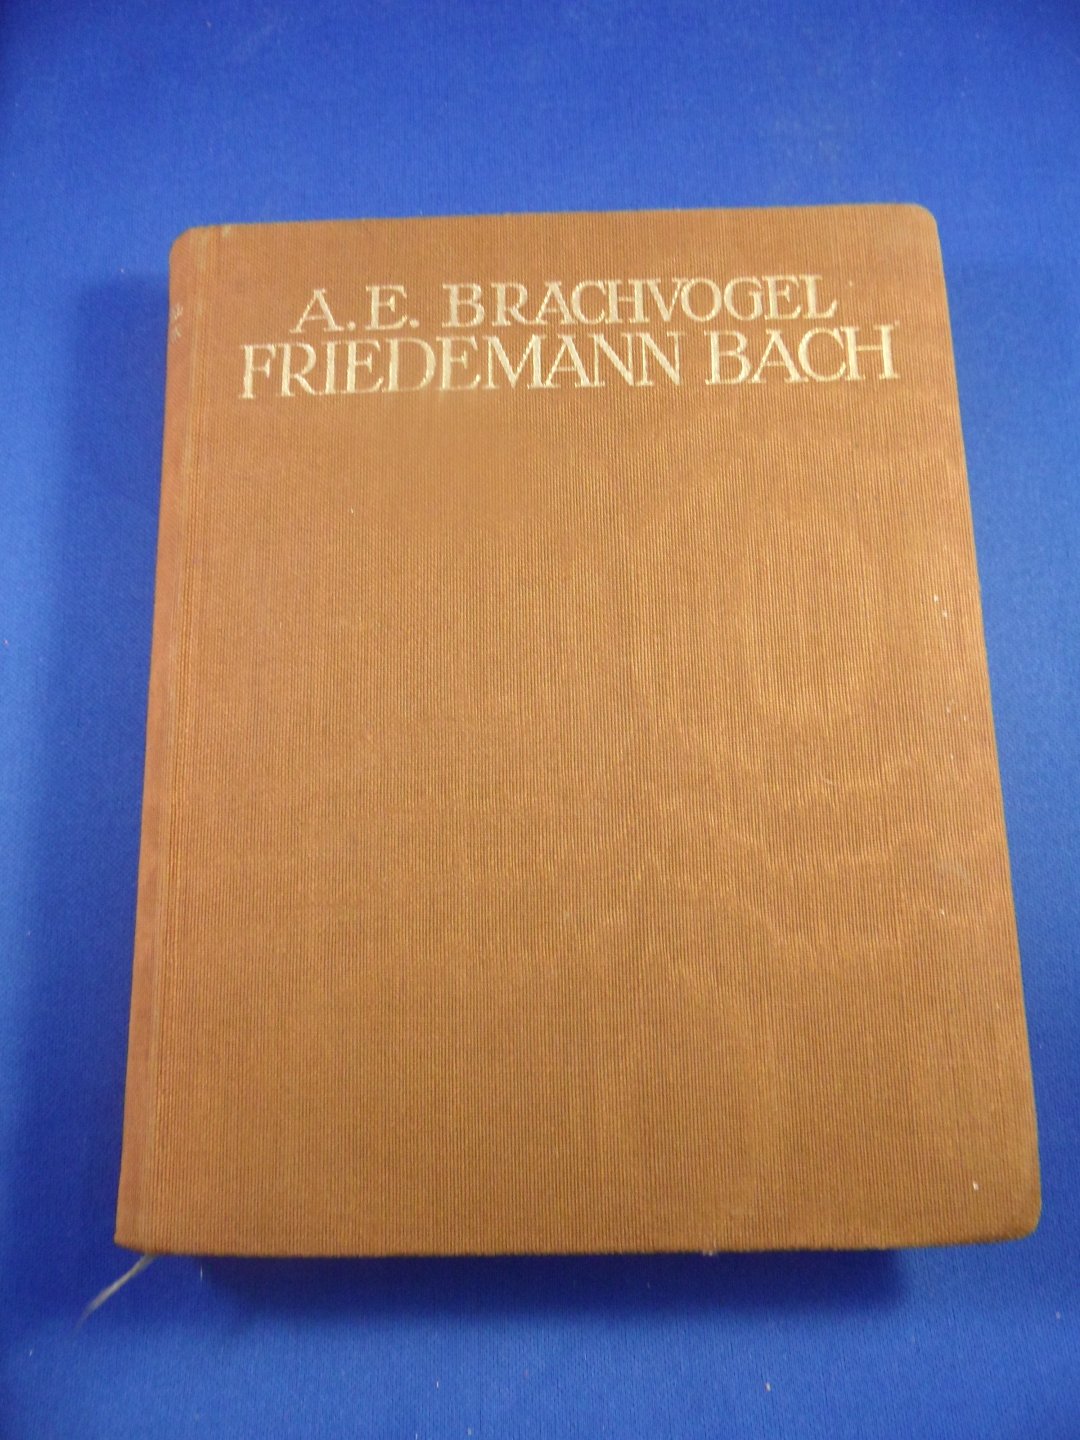 Brachvogel, A.E. - Friedemann Bach